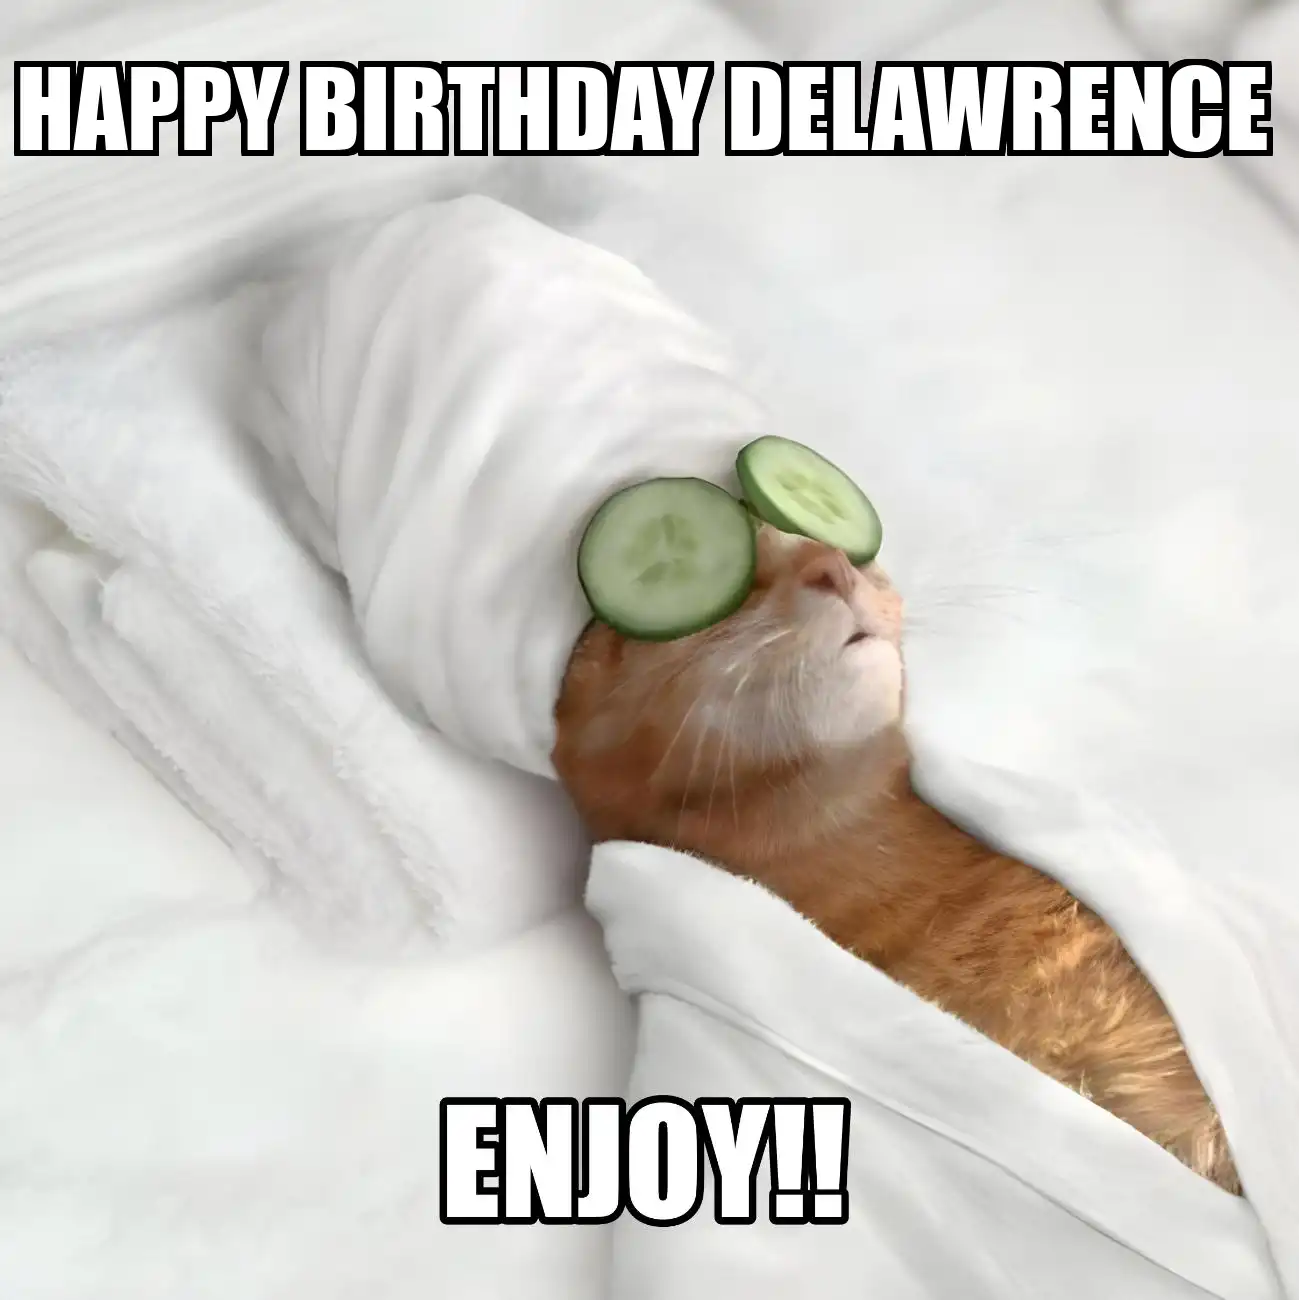 Happy Birthday Delawrence Enjoy Cat Meme